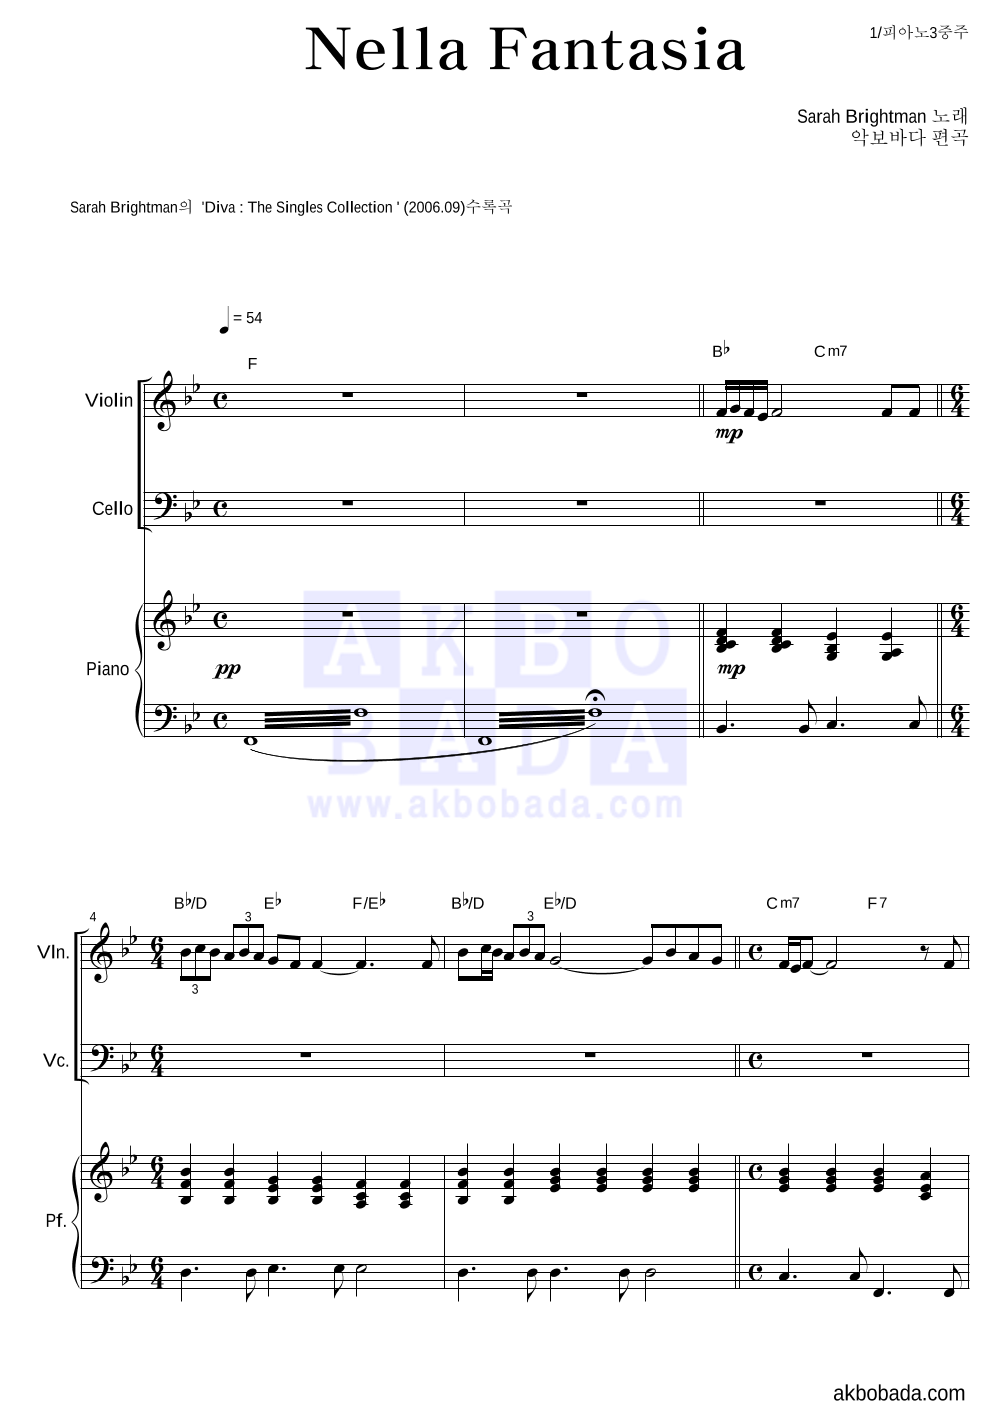 Sarah Brightman - Nella Fantasia 피아노3중주 악보 